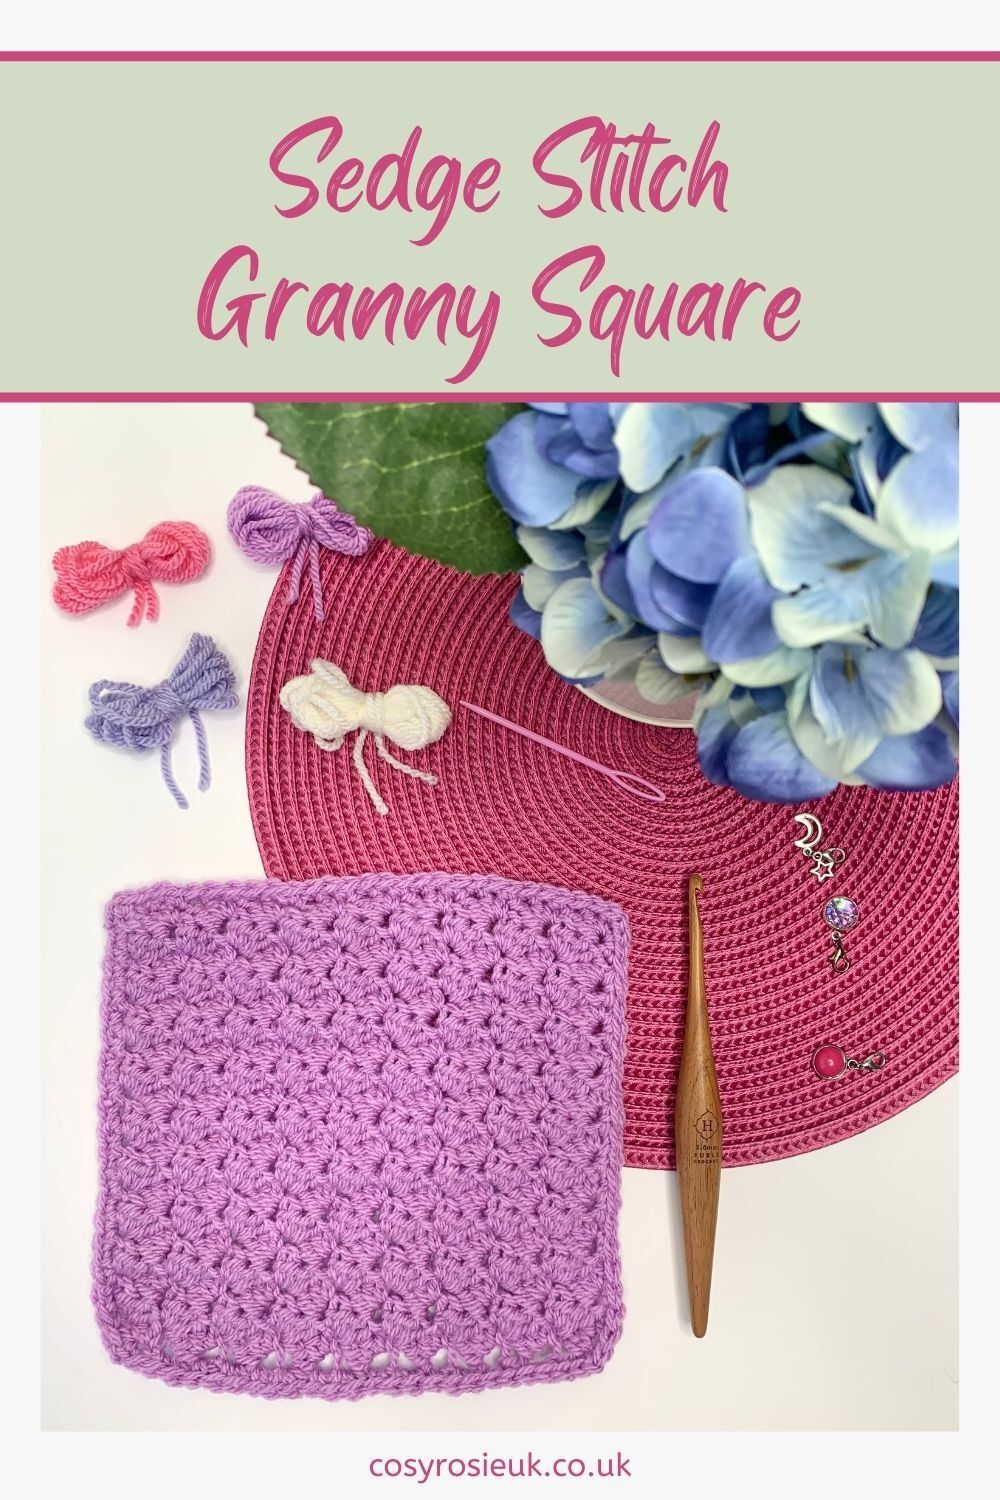 Sedge Stitch Granny Square Pattern